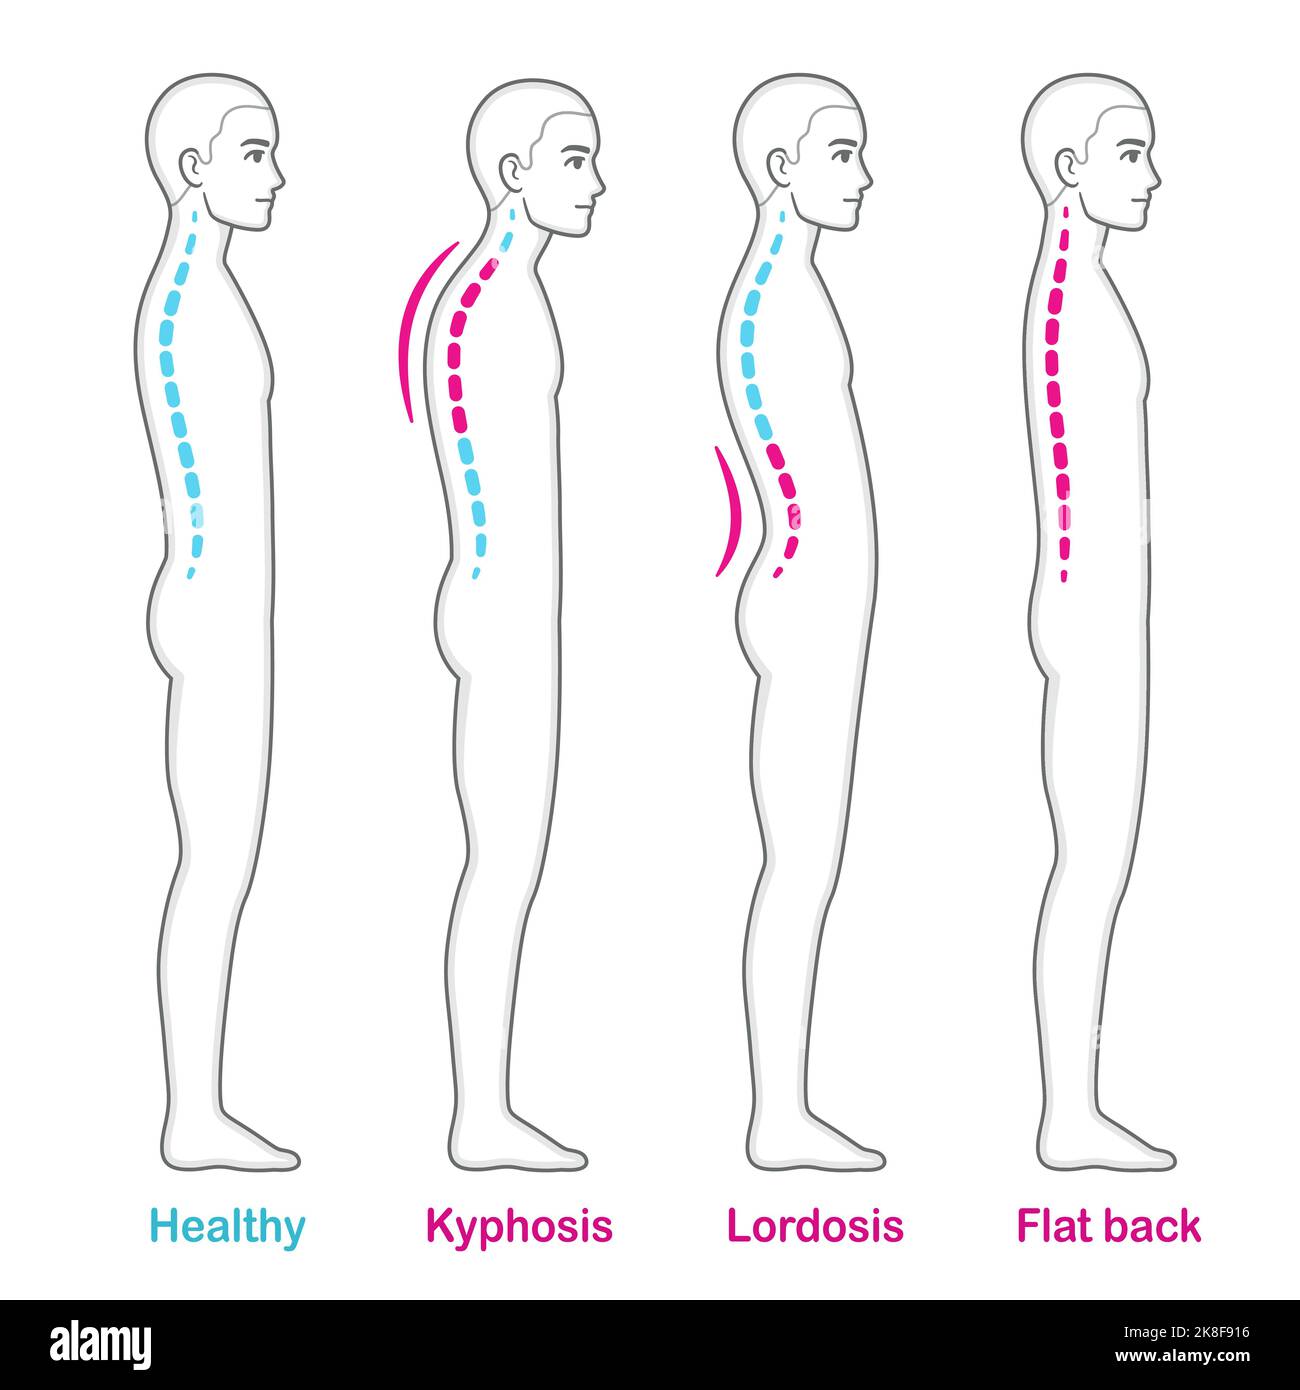 Rückenlage Probleme medizinische Diagramm. Junger Mann mit Kyphose, Lordose und flachem Rücken, gesunder Wirbelsäulenvergleich. Infografik Vektorgrafik. Stock Vektor